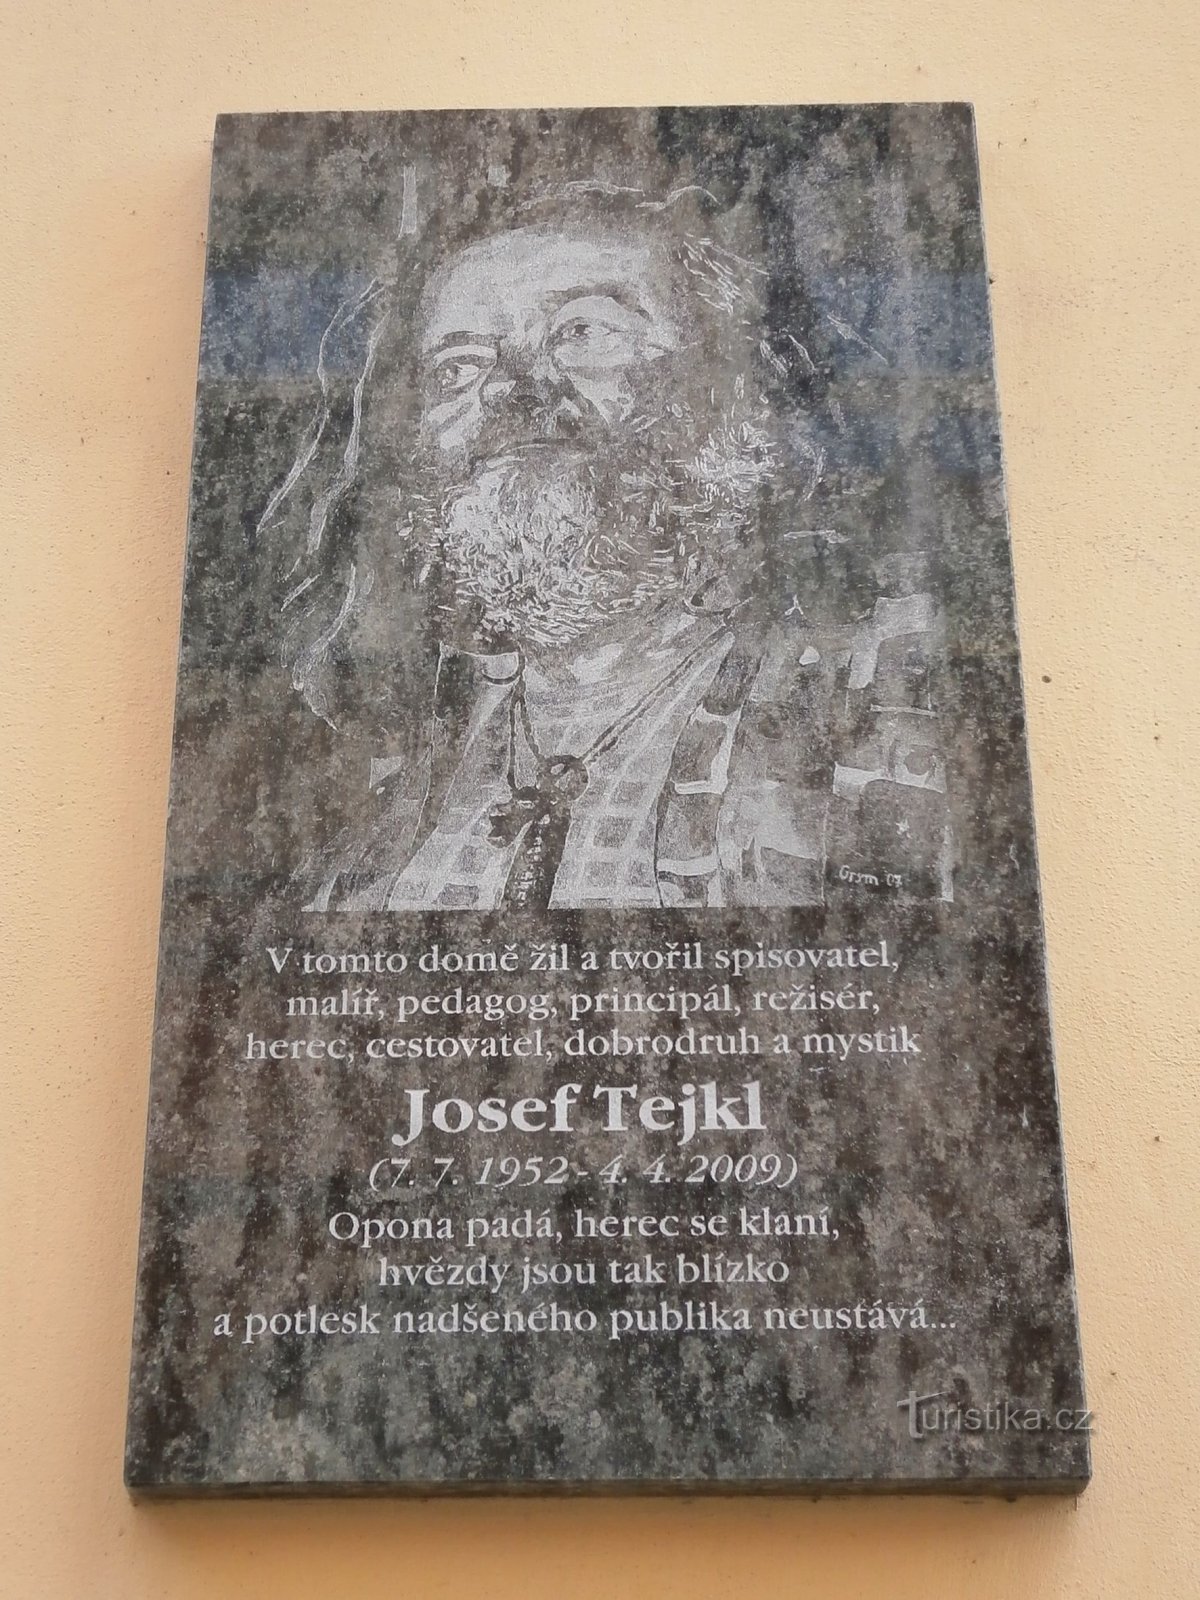 Targa commemorativa a Josef Tejkl (Hradec Králové, 15.7.2013)